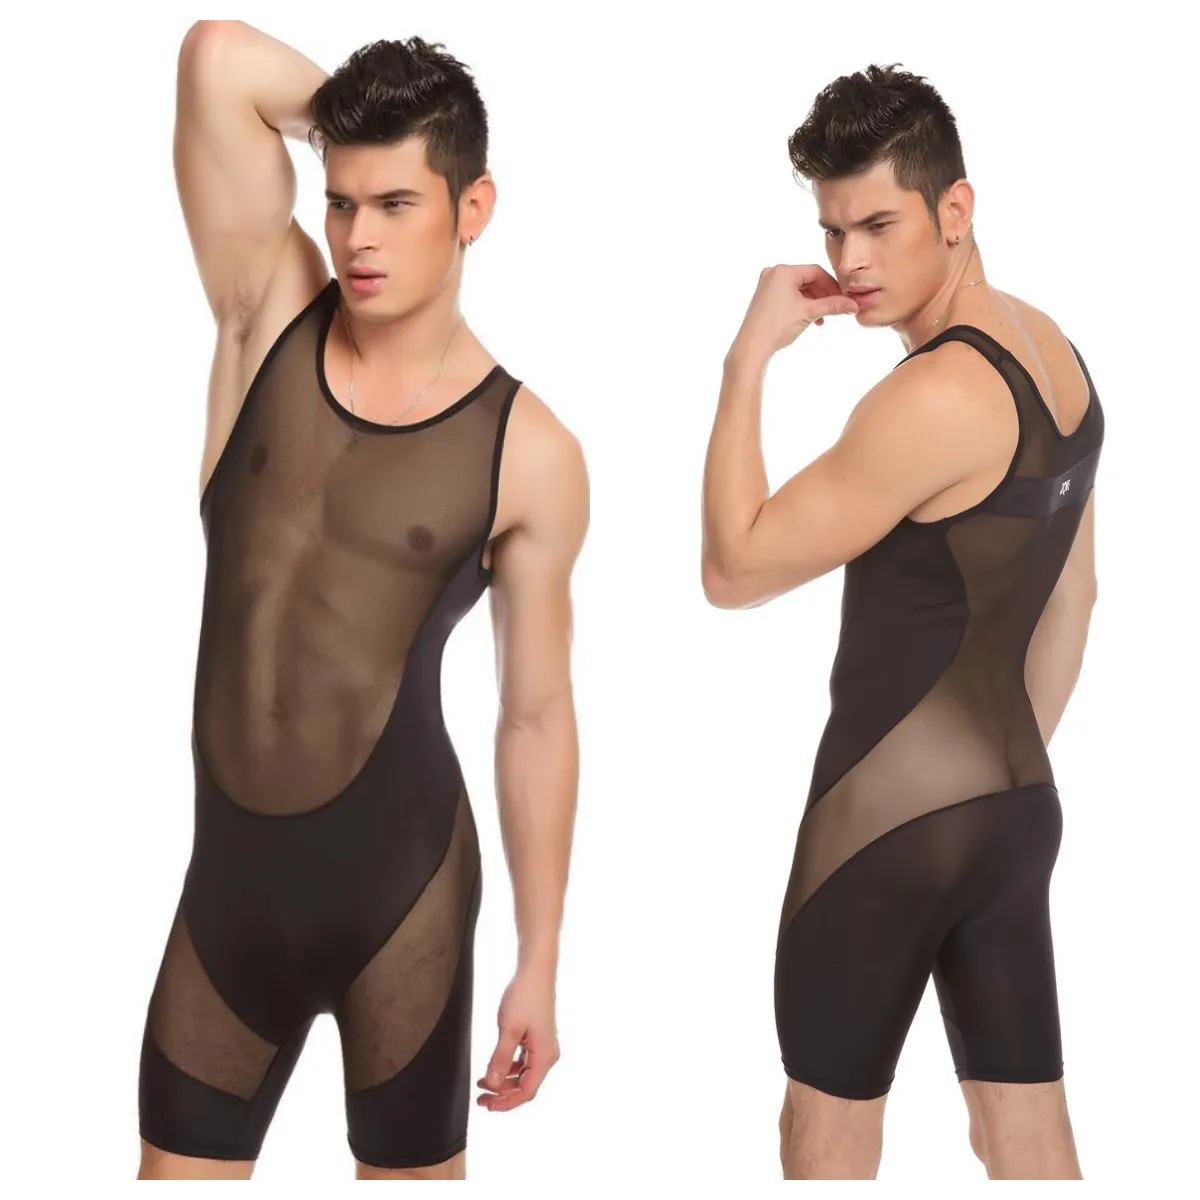 JQK Marke Sexy Unterhemden Bodys Herren Body Suit Transparente durchsichtige Unterwäsche für schwule Männer